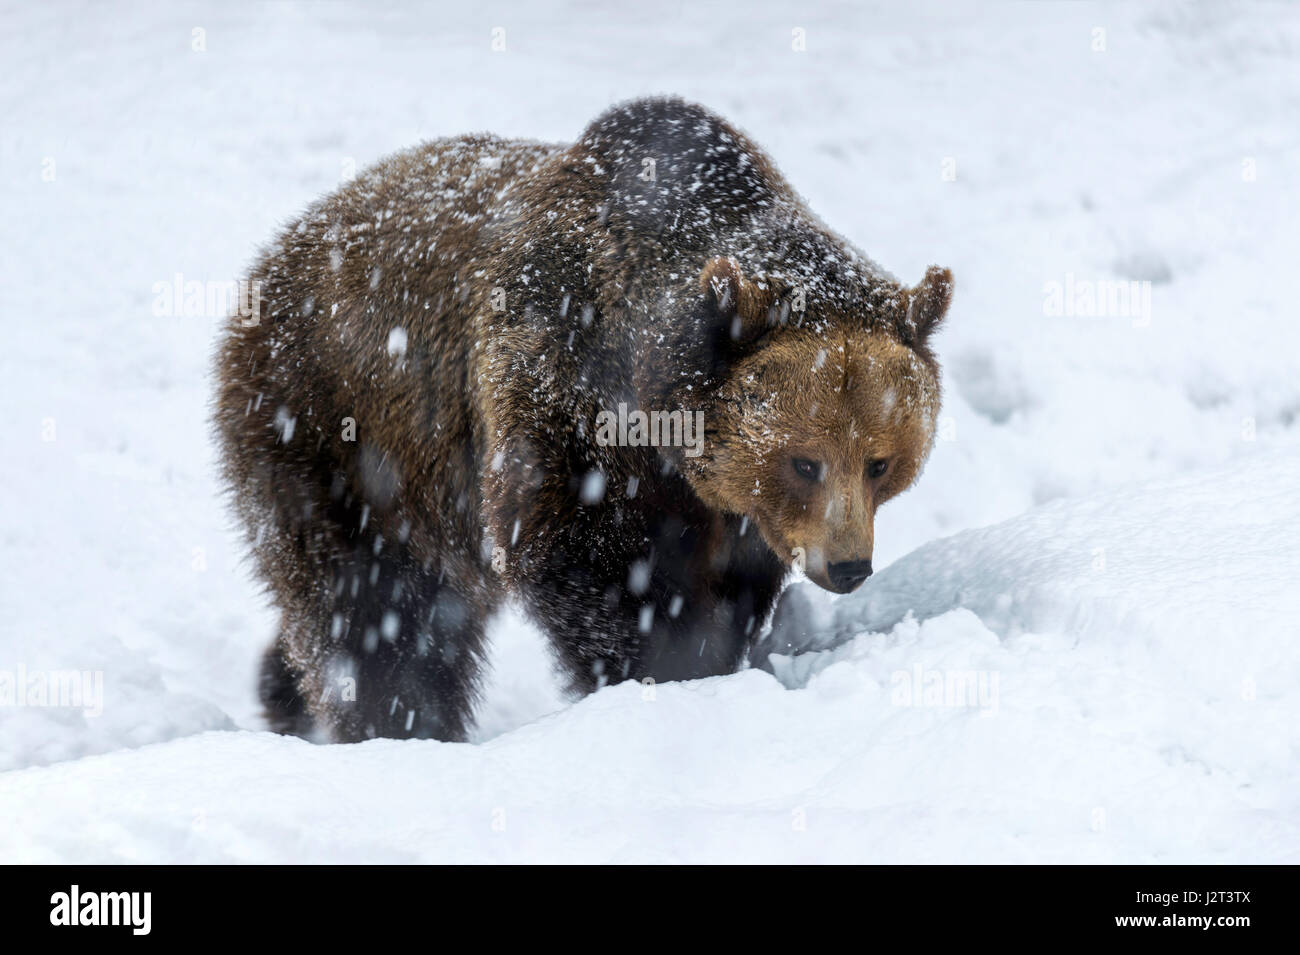 Solo para mujeres adultas Euroasiática de oso pardo (Ursus arctos) serpenteante en una tormenta de nieve de mediados de invierno. Foto de stock